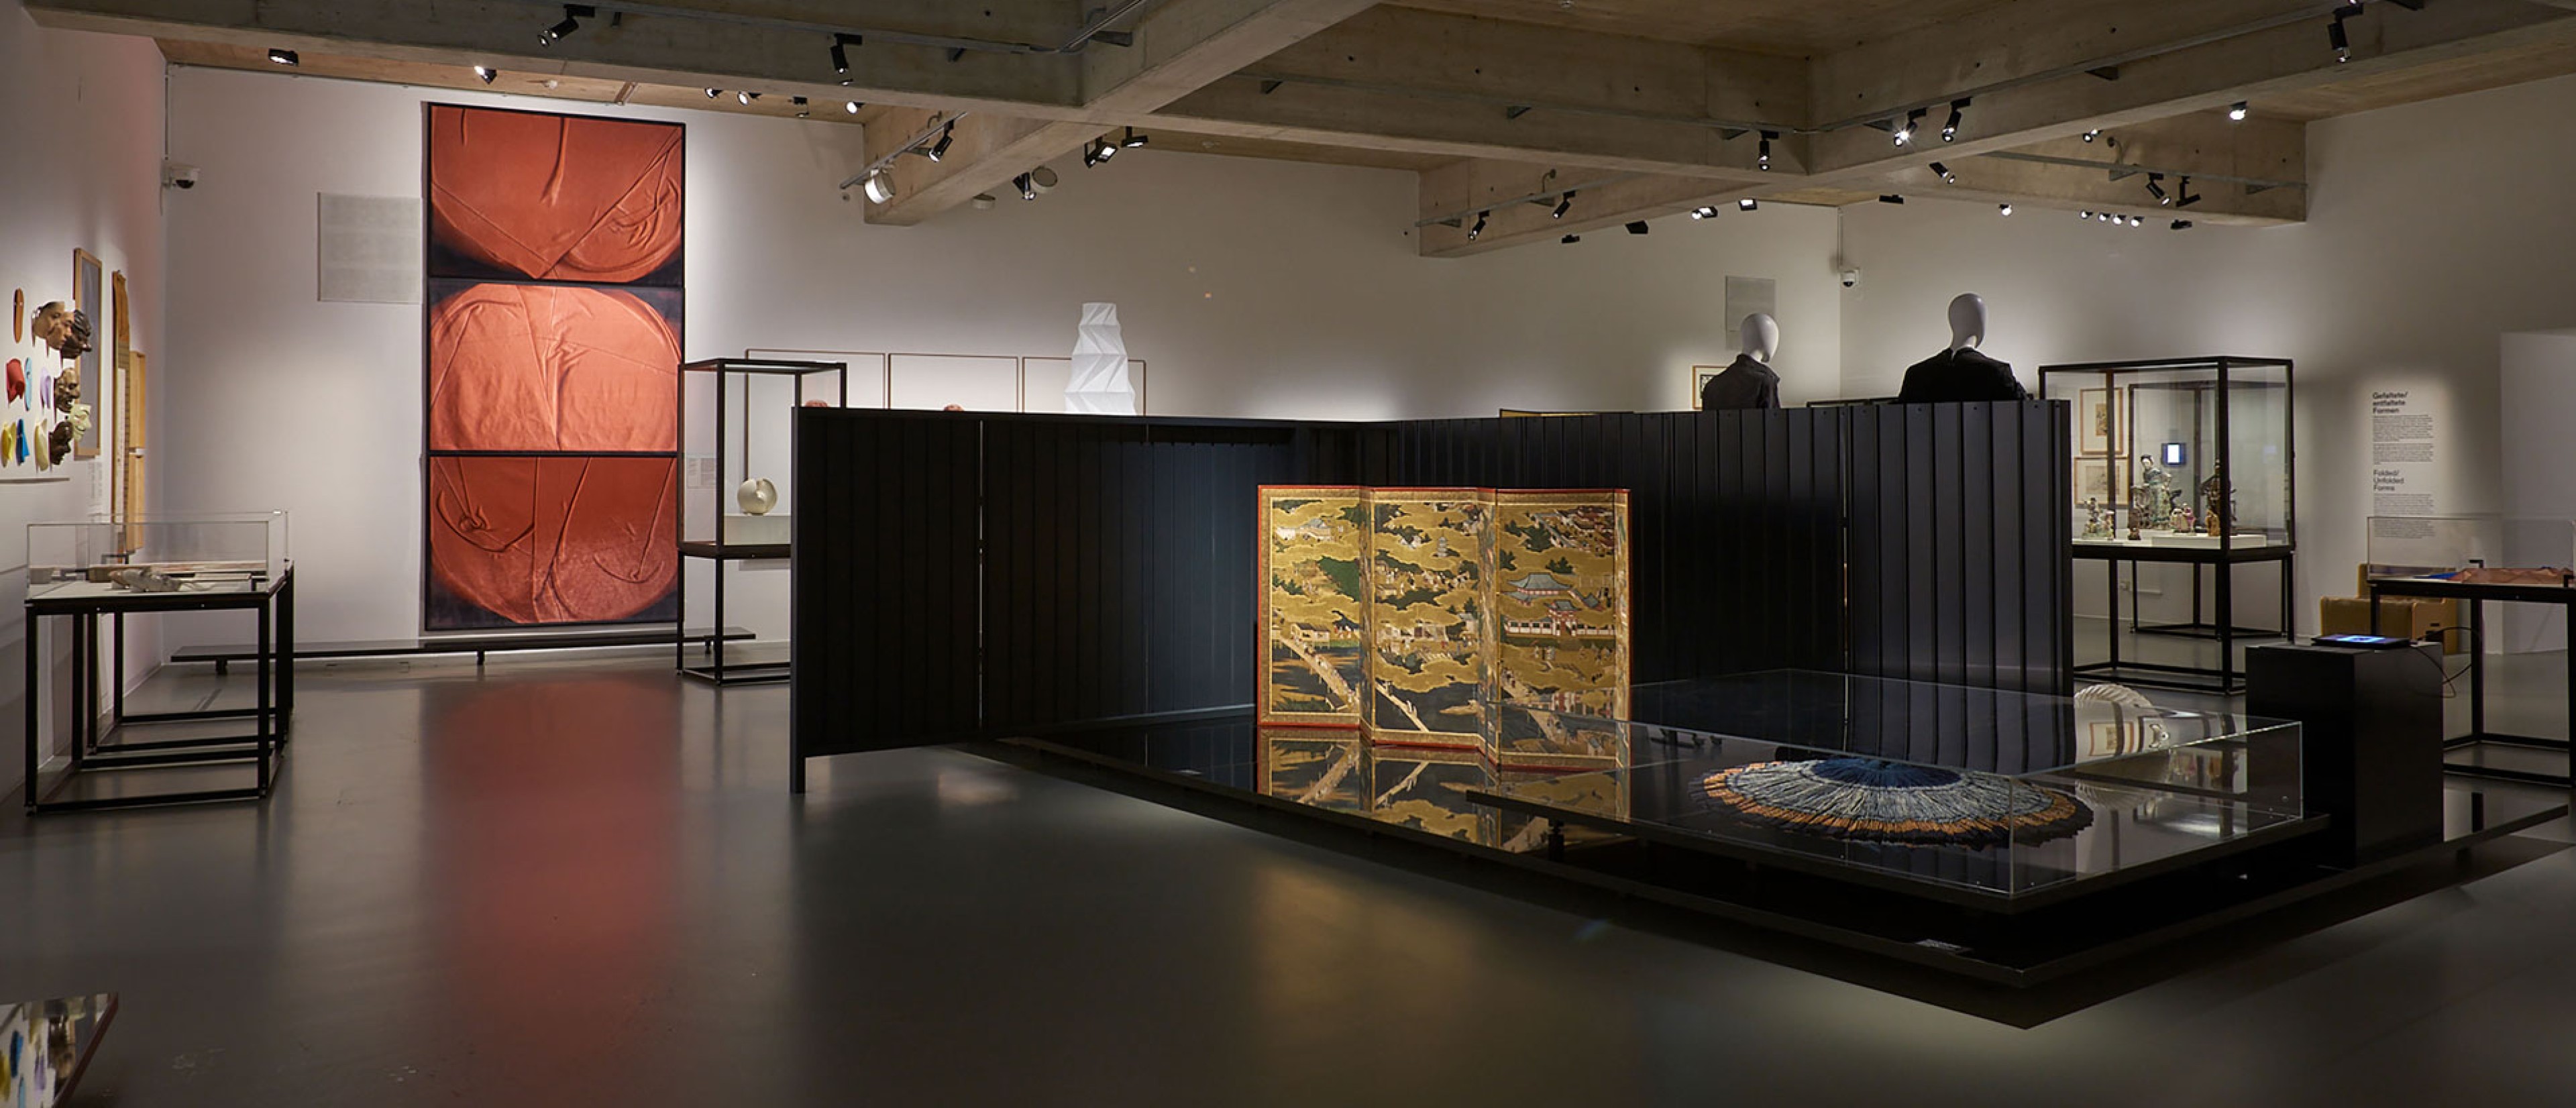 Ausstellungsraum mit Objekten: Fotografie an der Wand, Paravent in der Mitte des Raumes. 